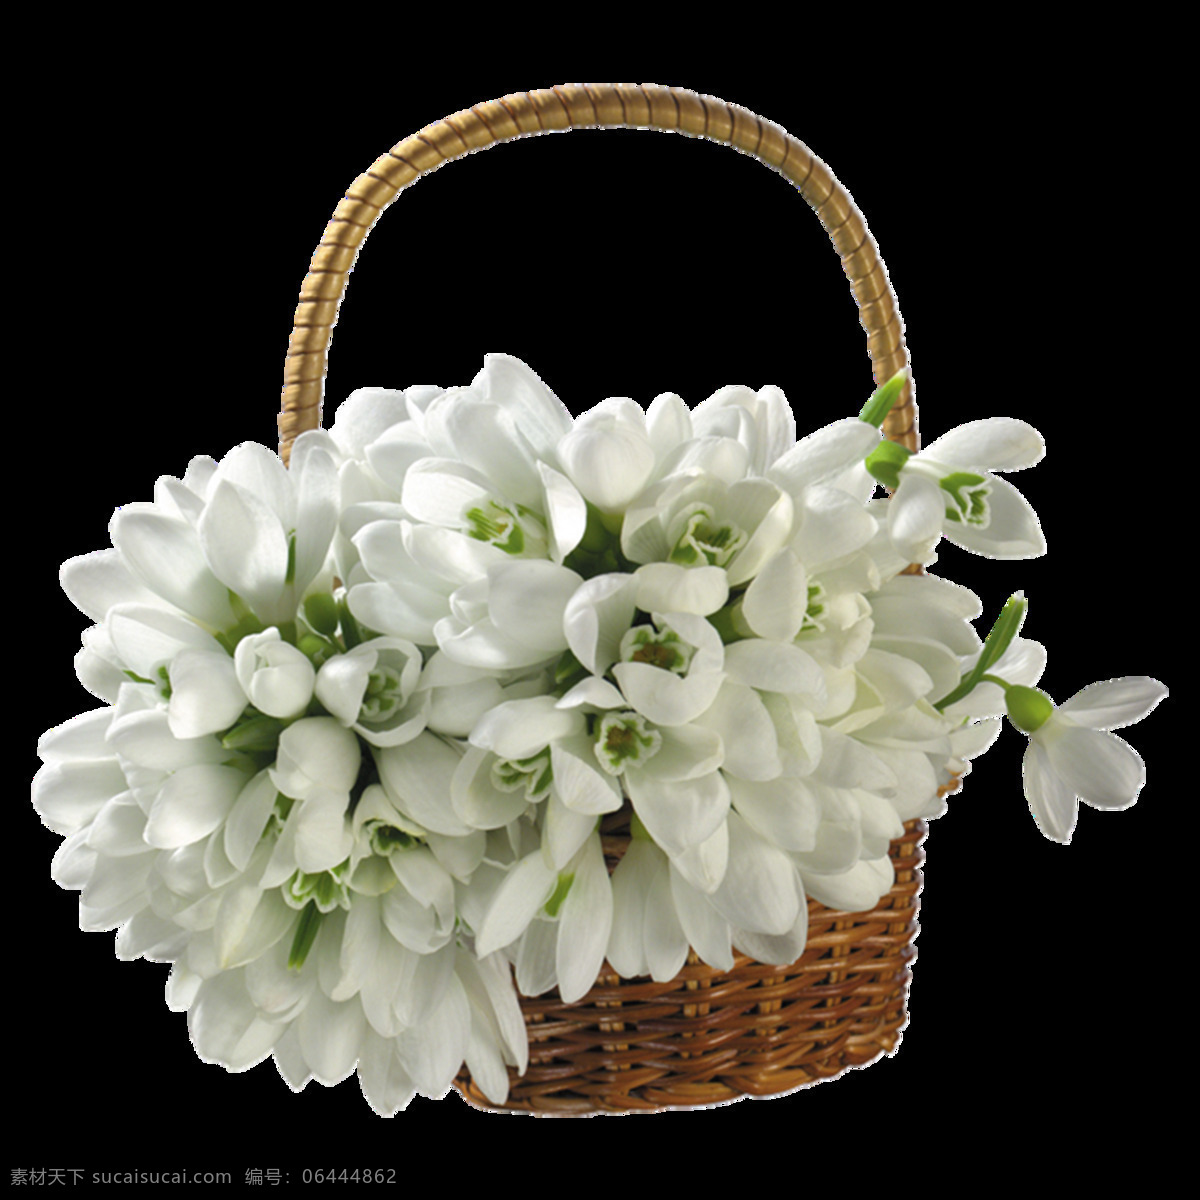 浪漫 花篮 花朵 元素 小清新 竹篮 白色花朵 免抠